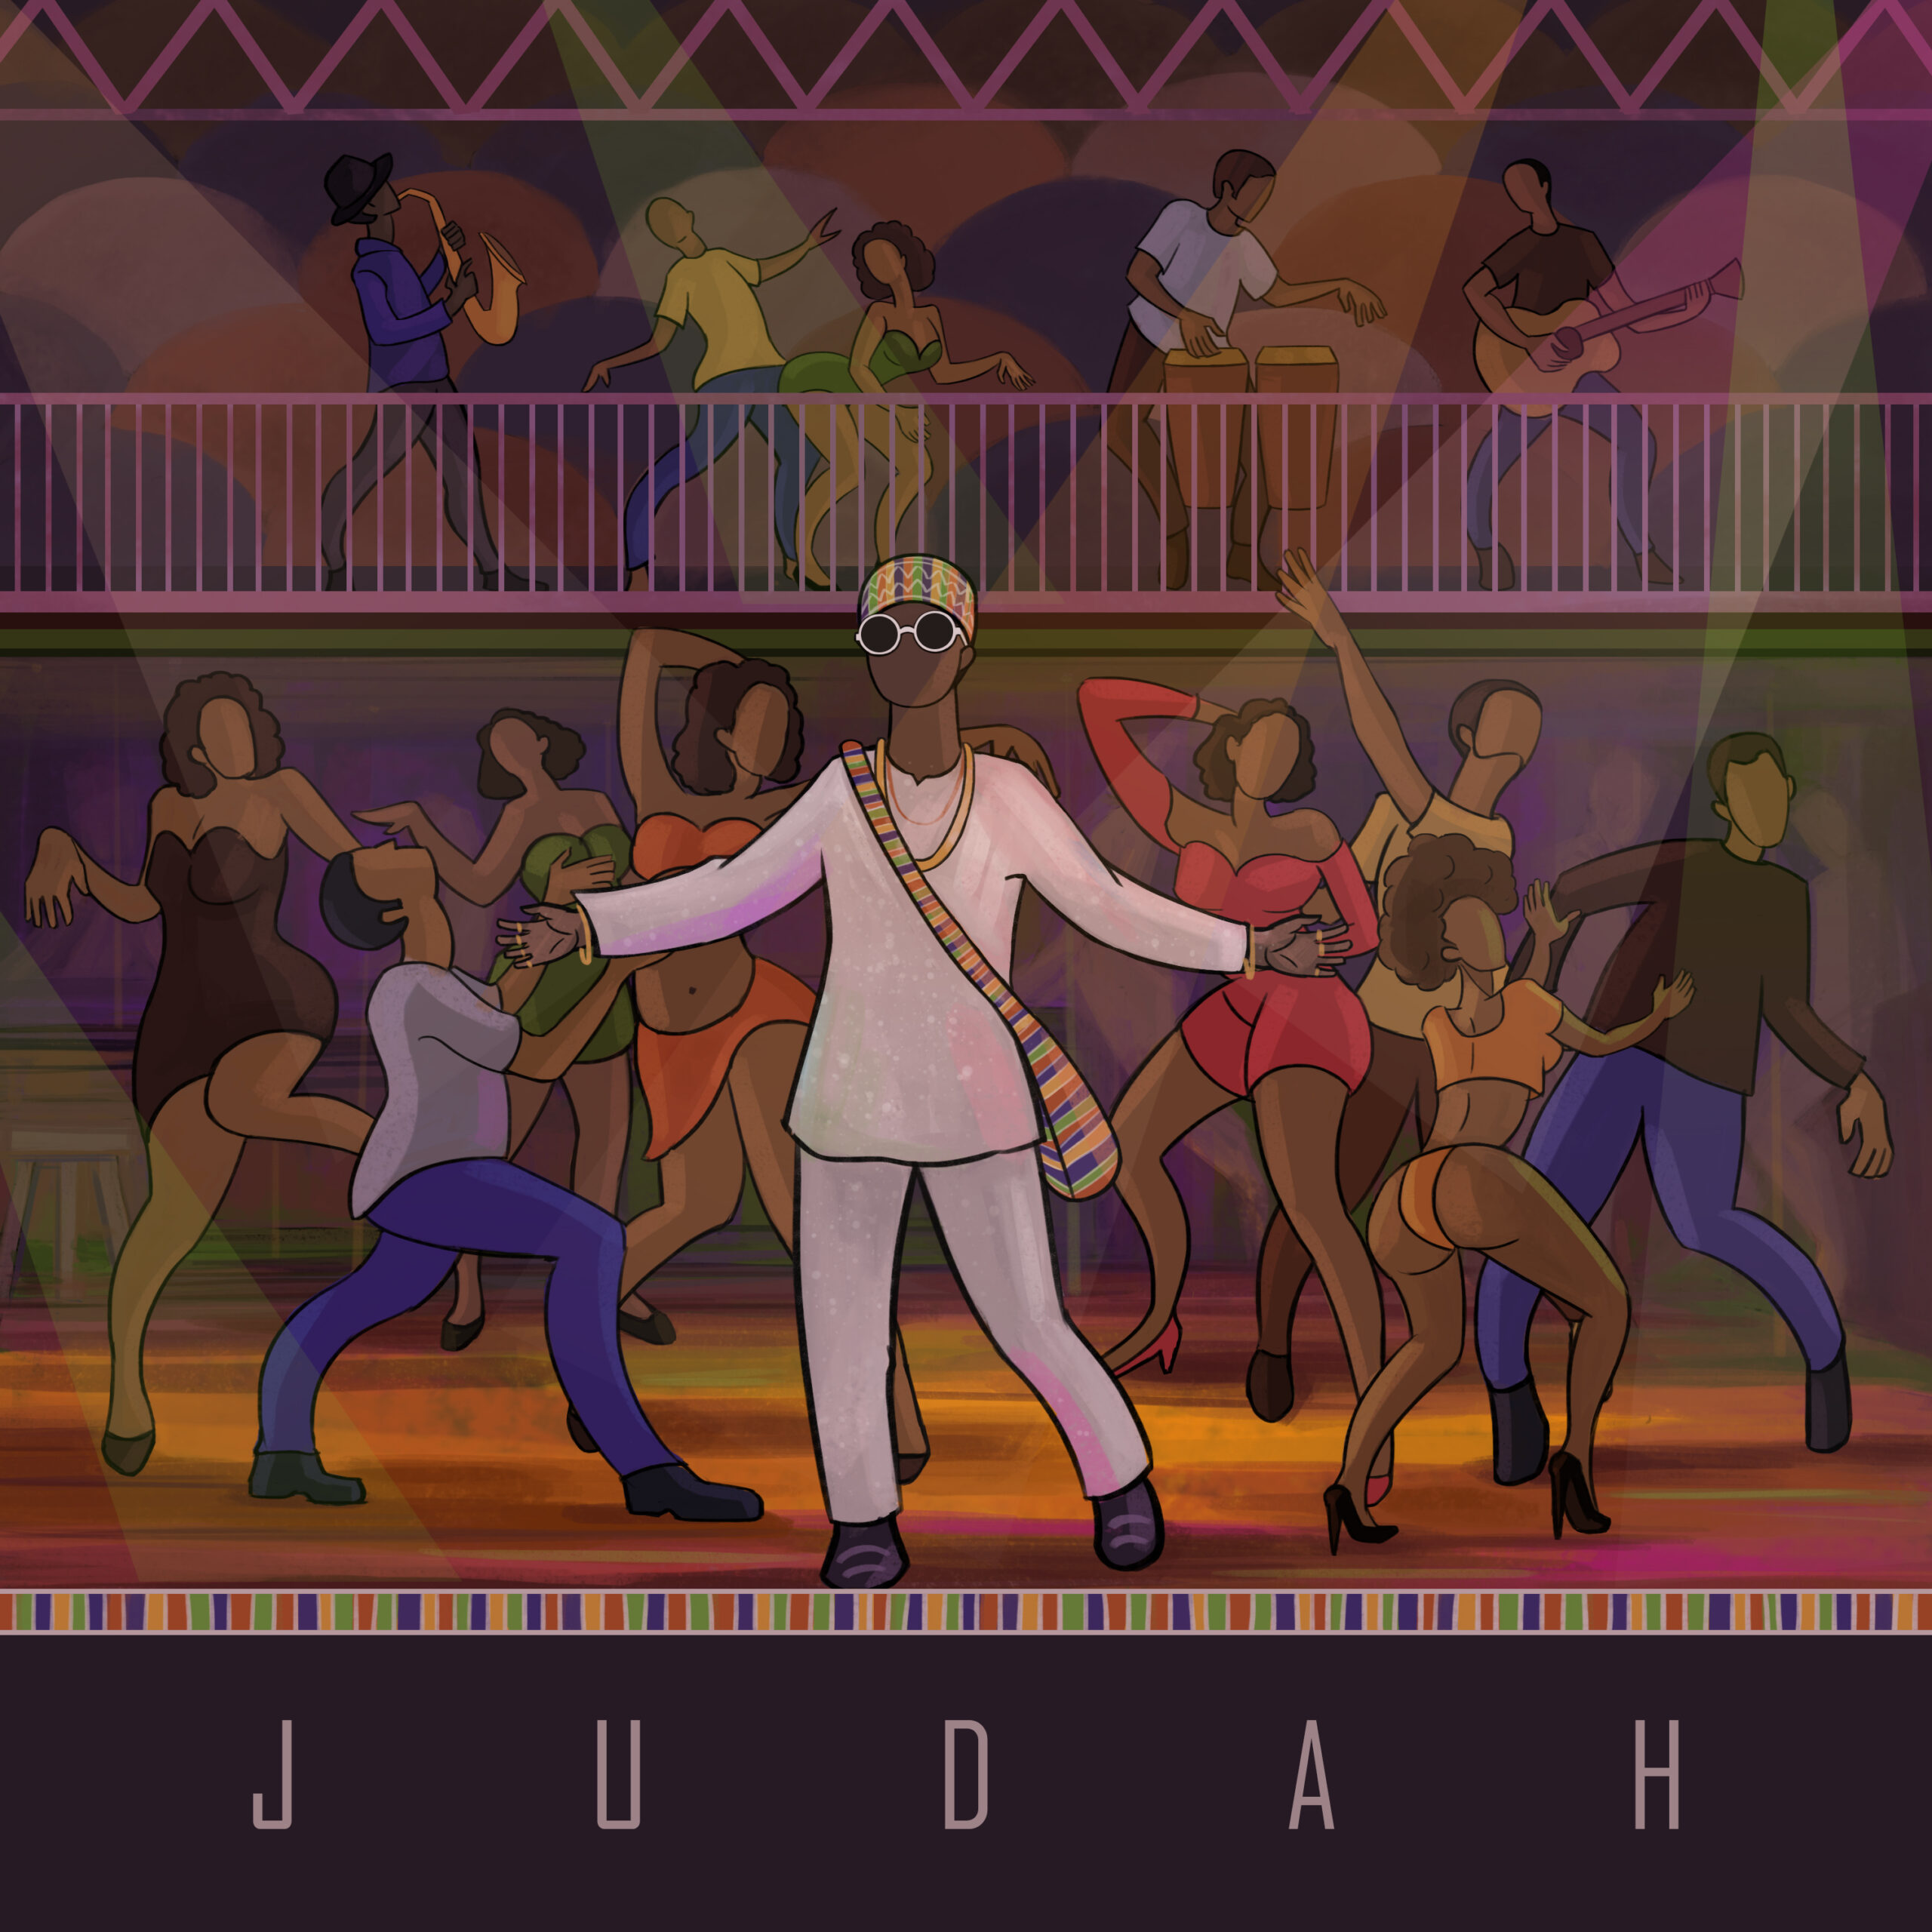 Judah cover art for the self entitled single Judah